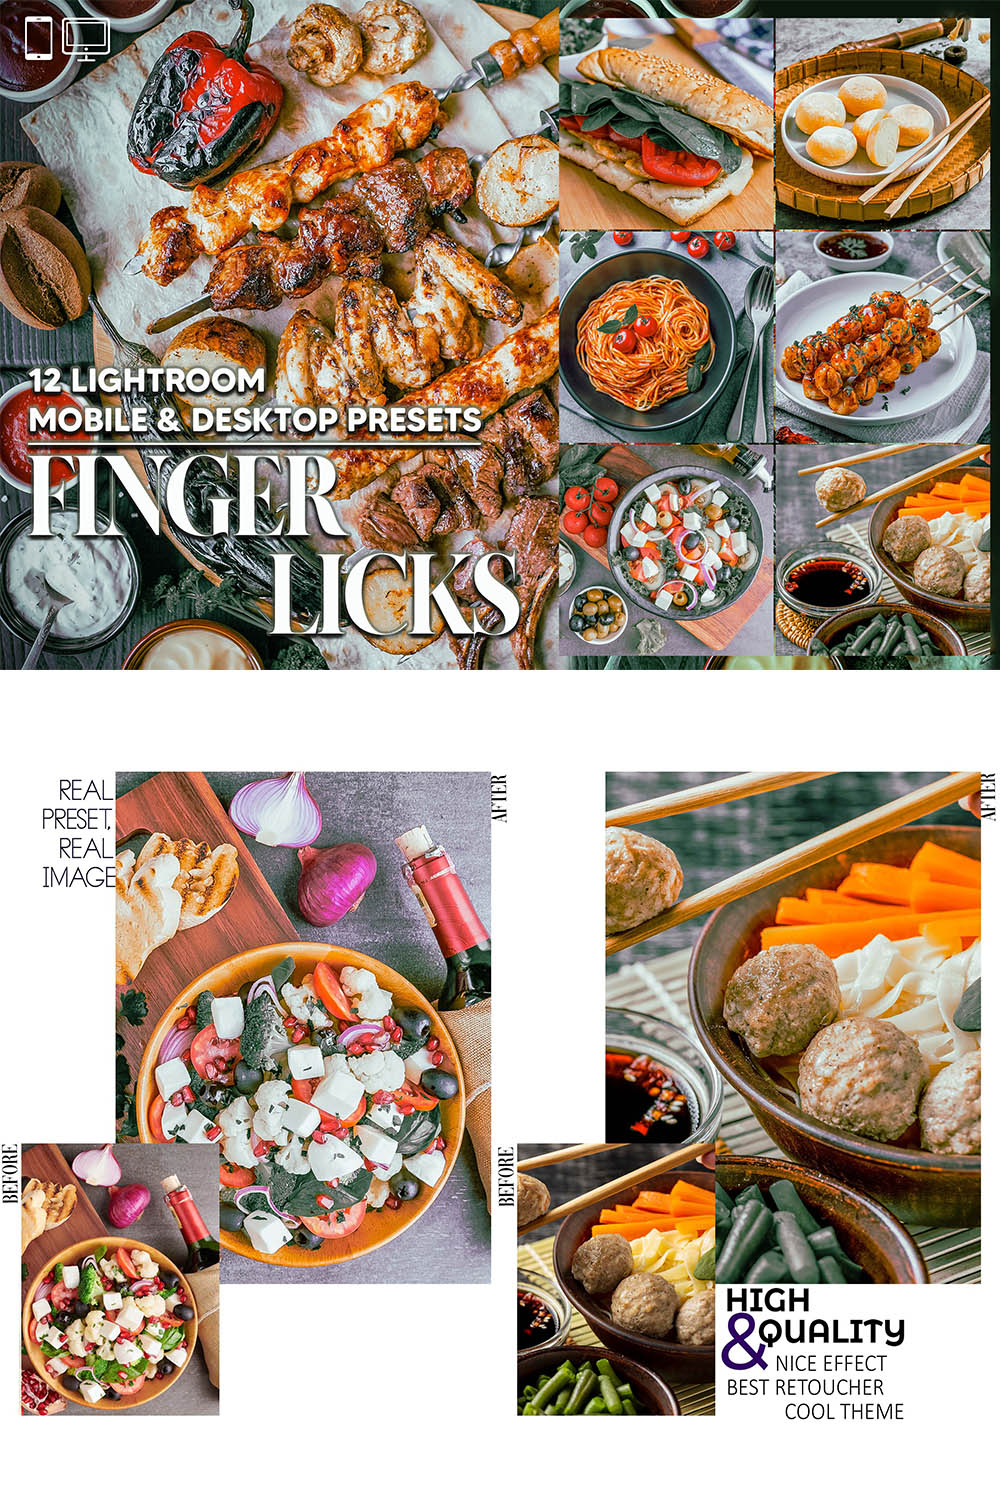 12 Finger Licks Lightroom Presets, Food Mobile Preset, Fastive Desktop LR Filter DNG Lifestyle Theme For Blogger Portrait Instagram pinterest preview image.